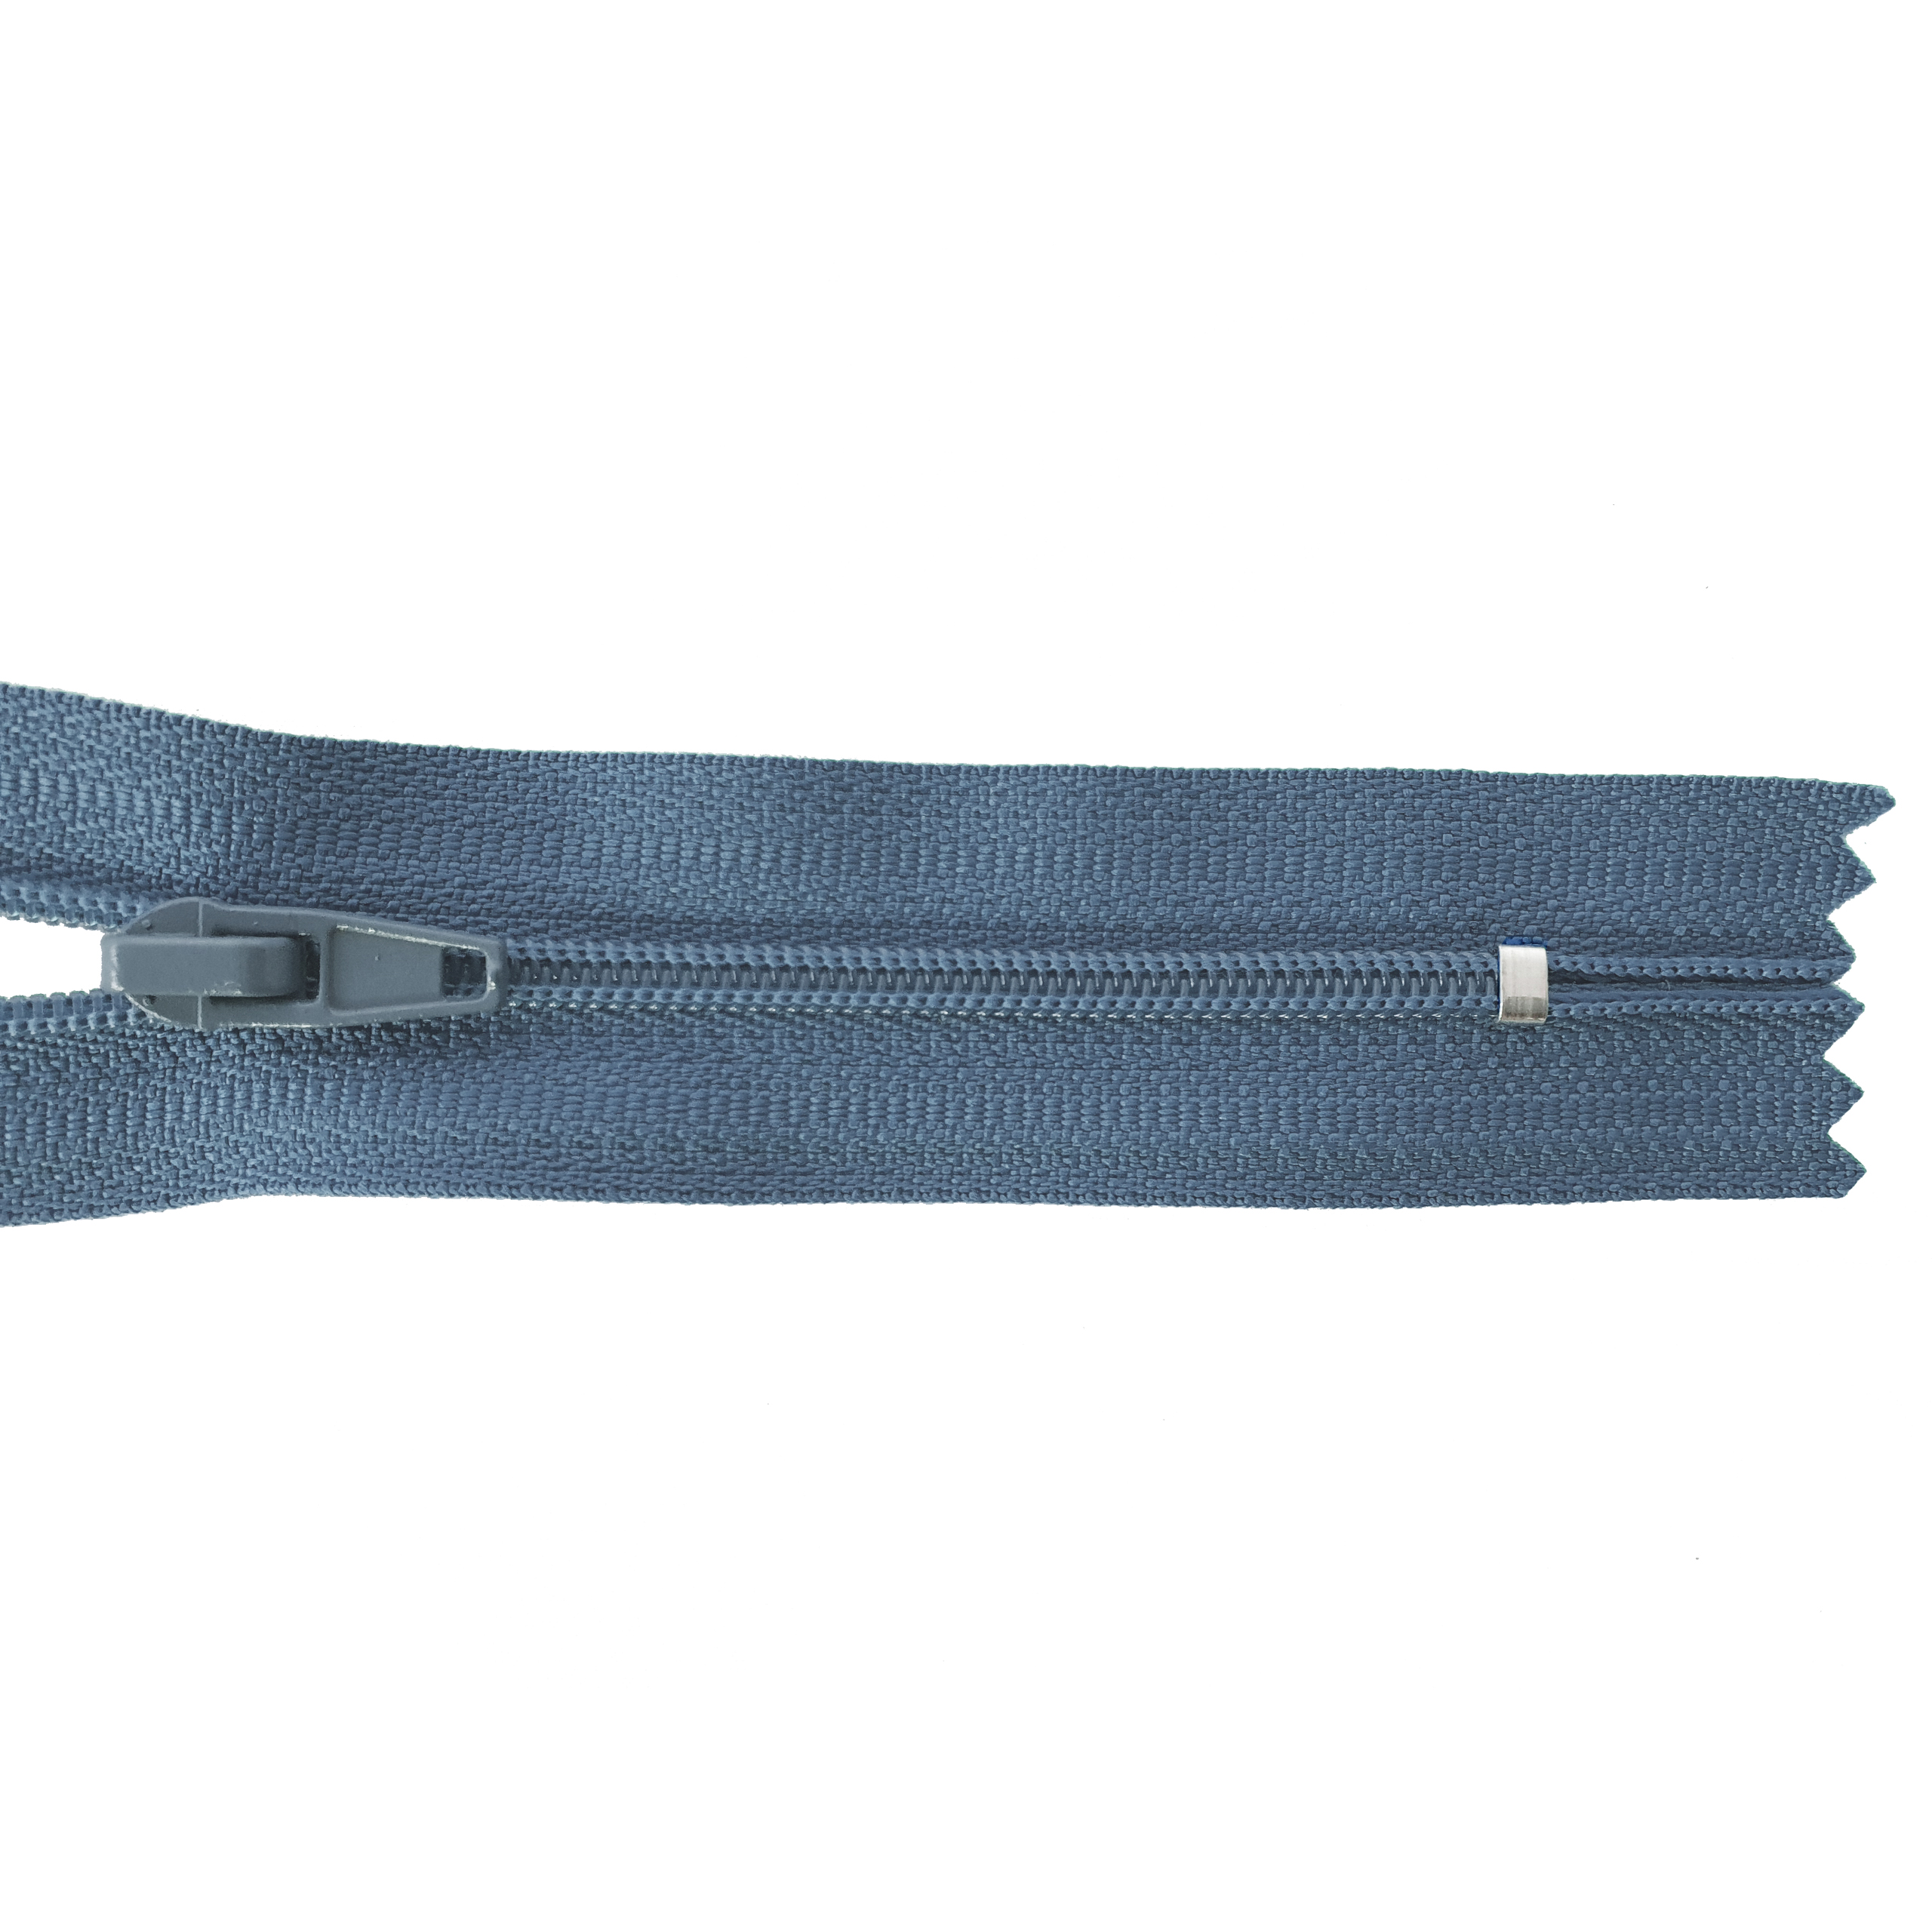 Reißverschluss 16cm, nicht teilbar, PES-Spirale fein, jeansgraublau, hochwertiger Marken-Reißverschluss von Rubi/Barcelona